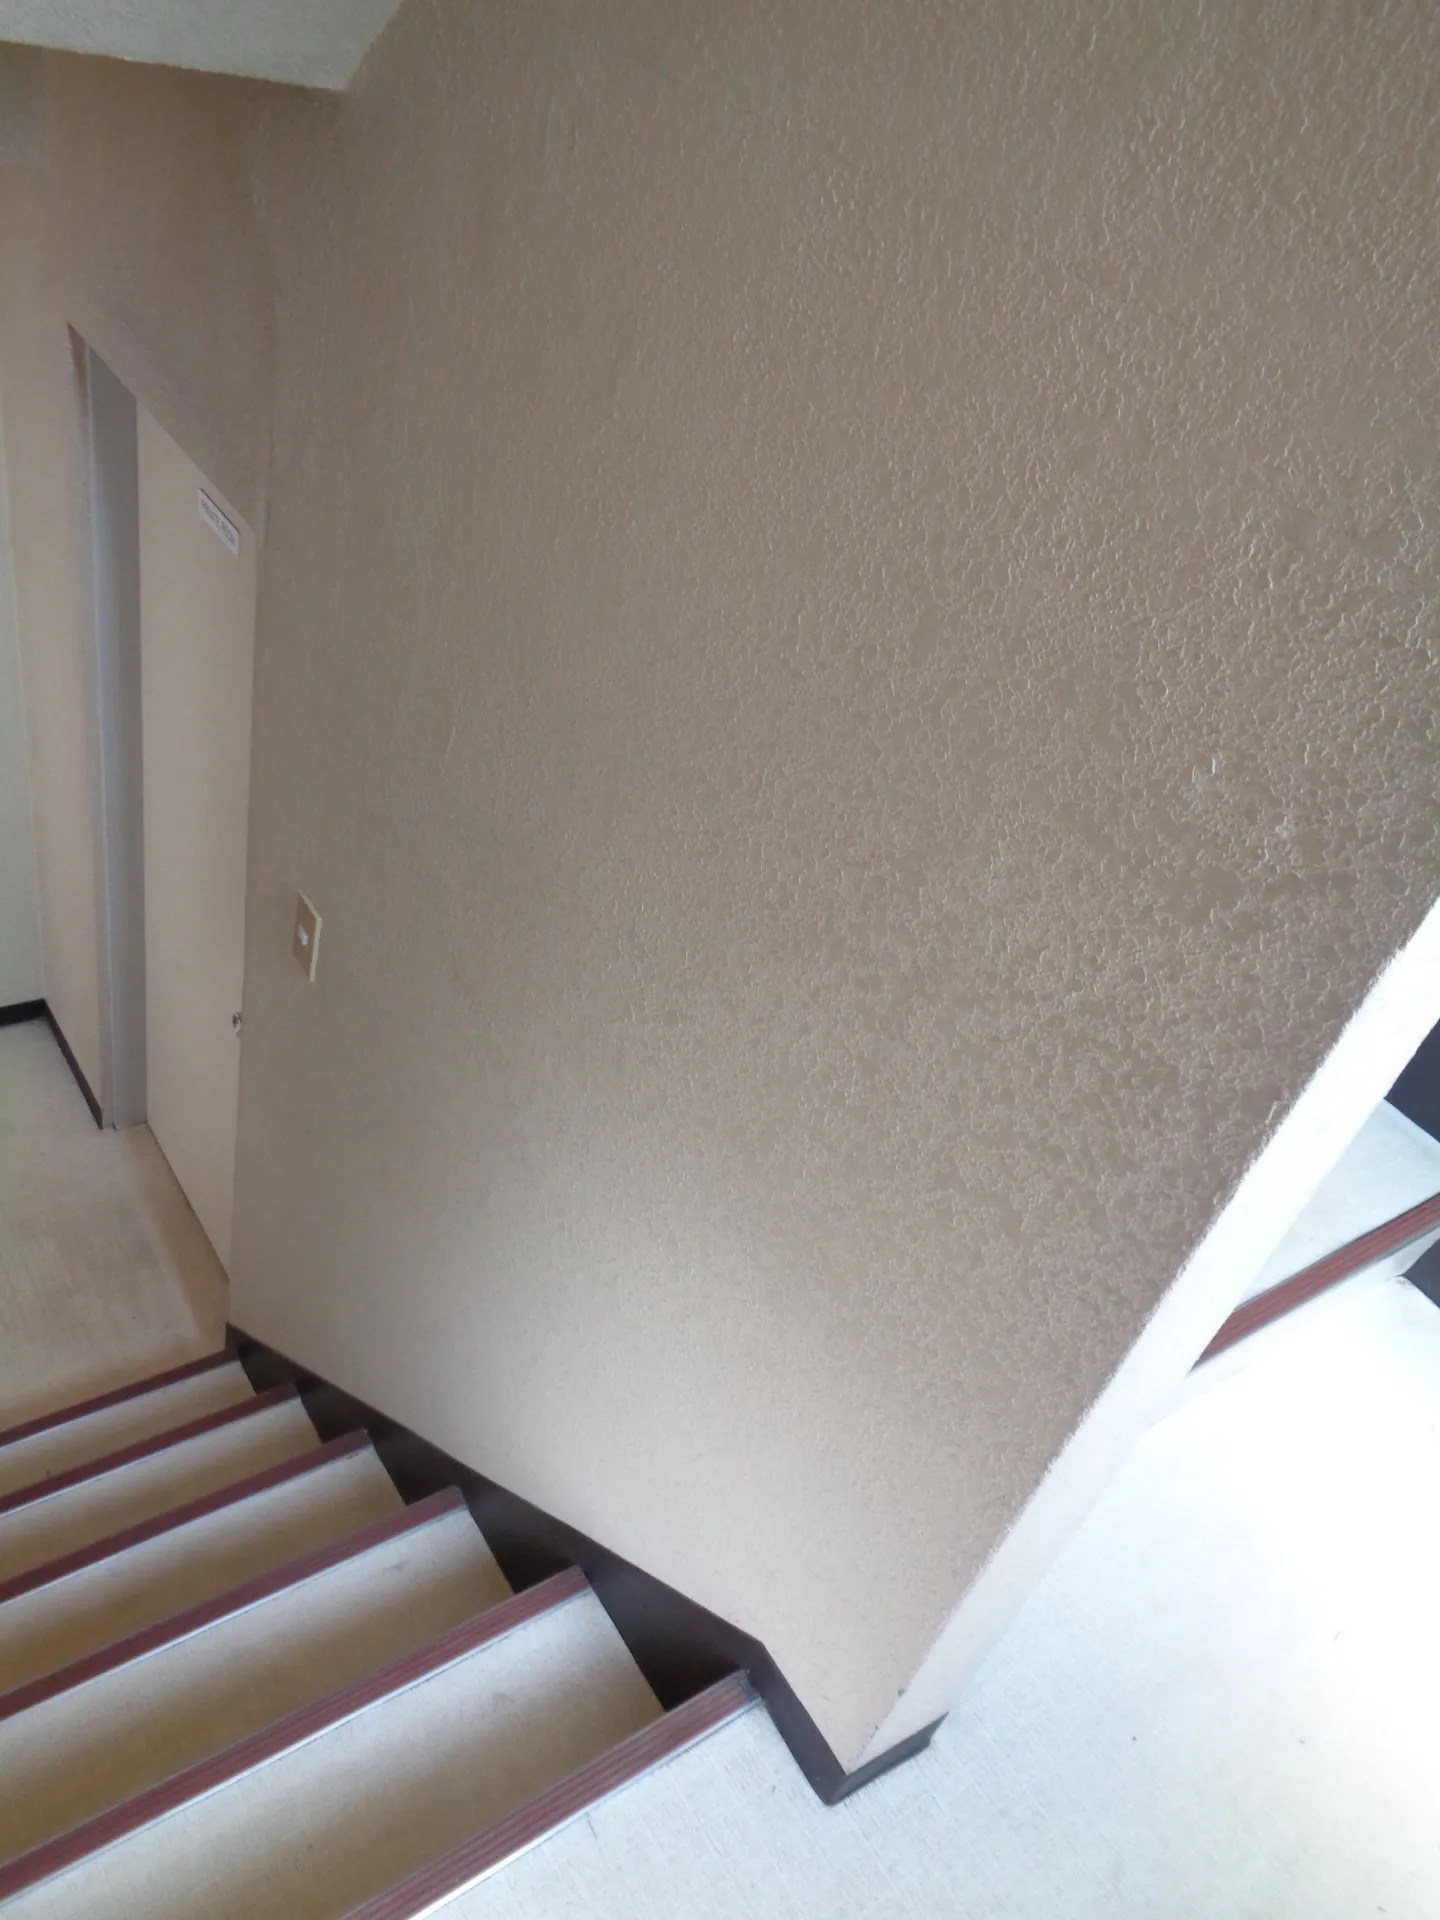 [【名古屋市】事務所の階段に手摺の取付